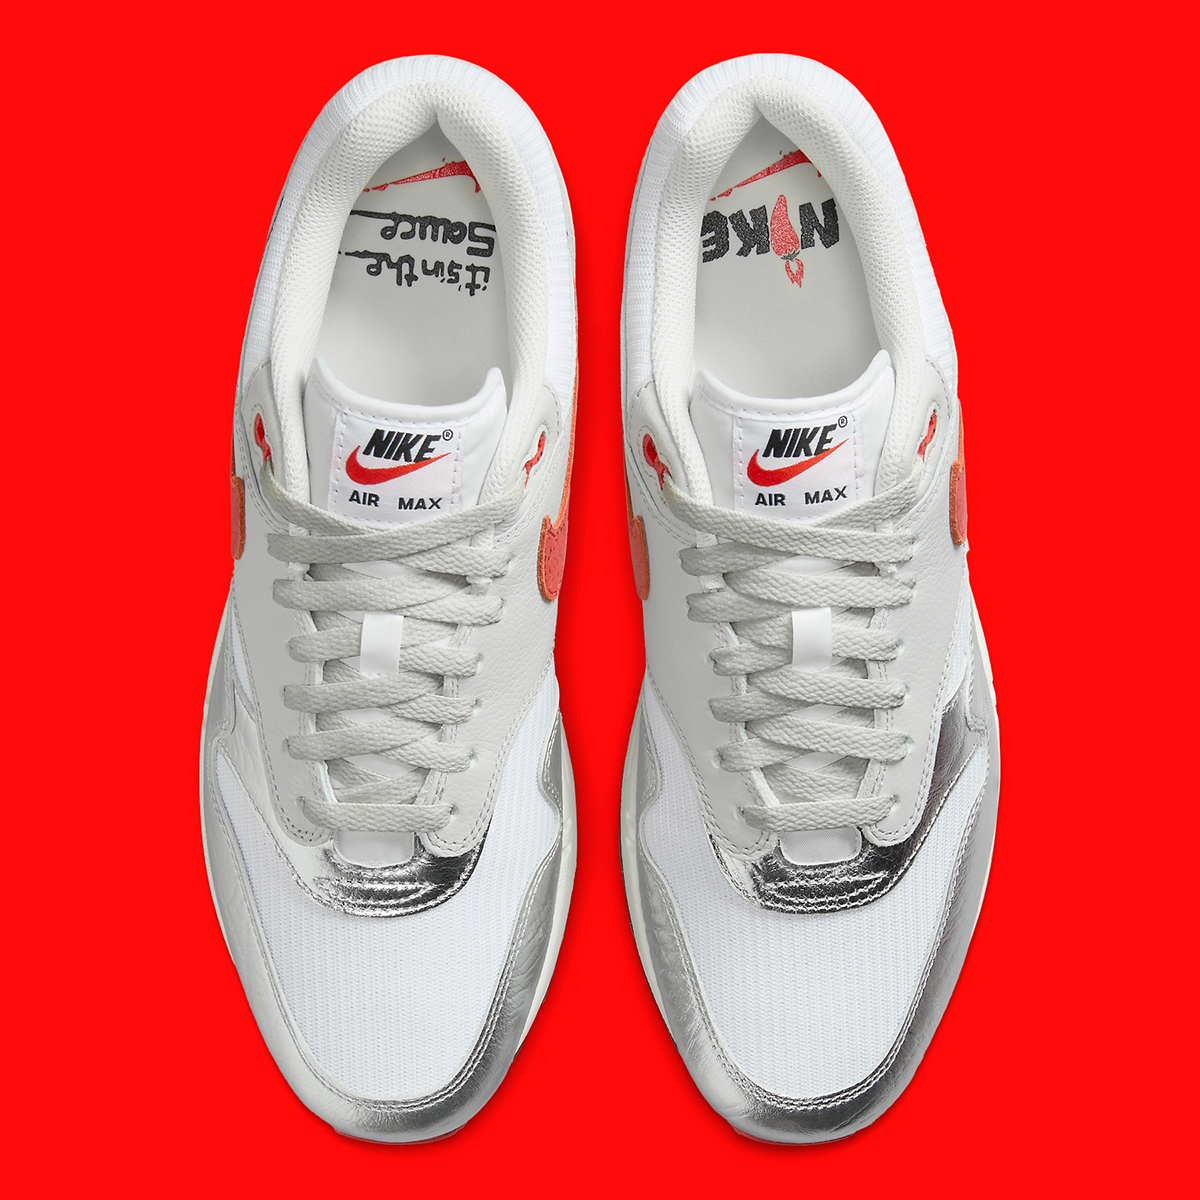 Nike Air Max 1 Chili Pepper Release Date 8